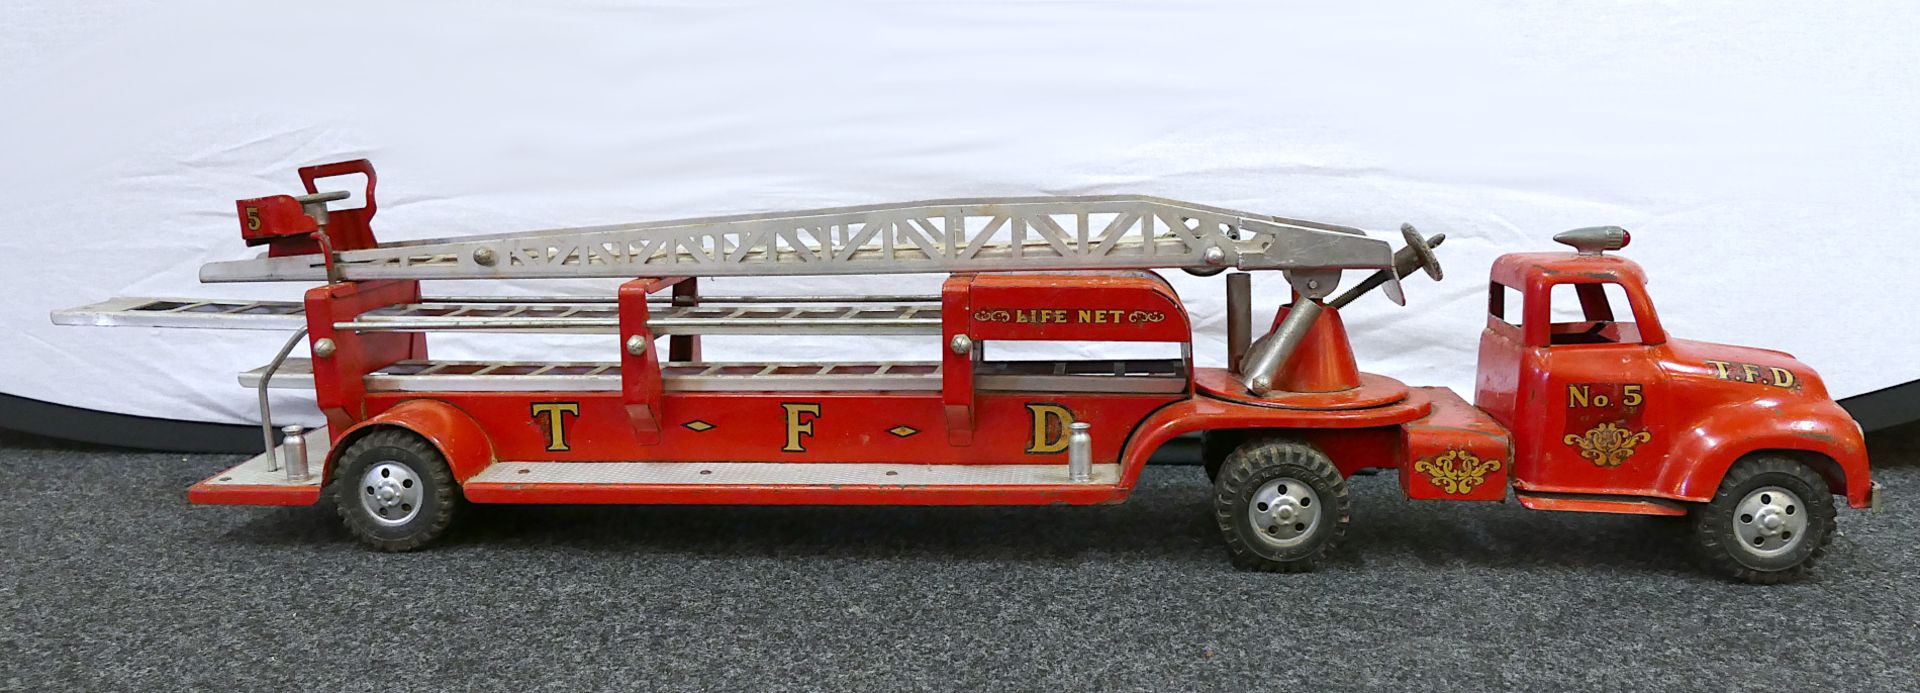 1 Feuerwehrleiterwagen TONKA, USA "T.F.D. No. 5" wohl 1950er Jahre, rot lackierter Stahl u.a., ca. L - Image 2 of 8